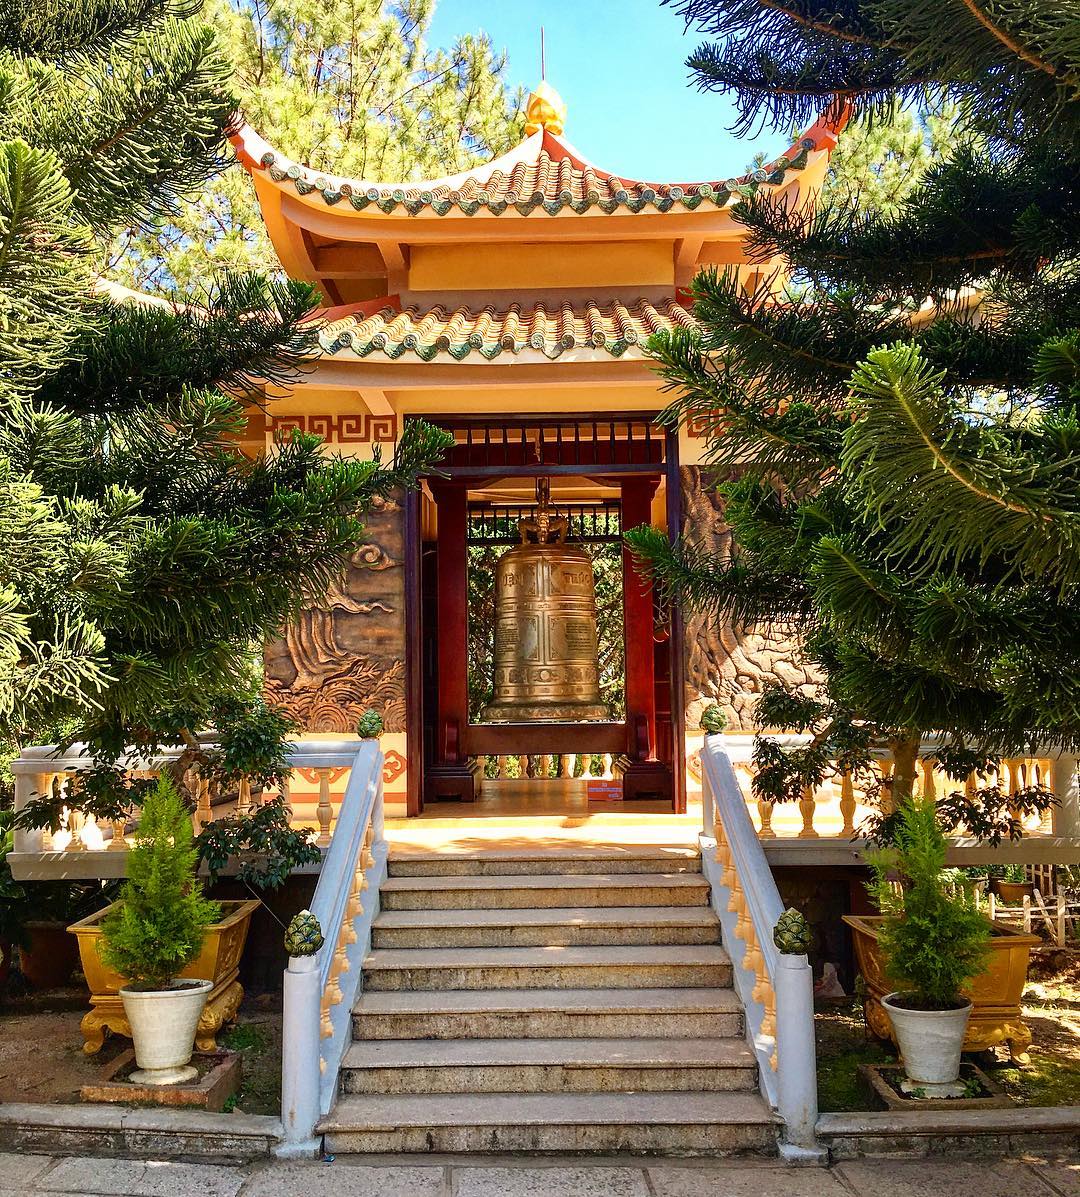 Kiến trúc của chùa Thiền Viện Trúc Lâm Đà Lạt thanh thoát, hiện đại